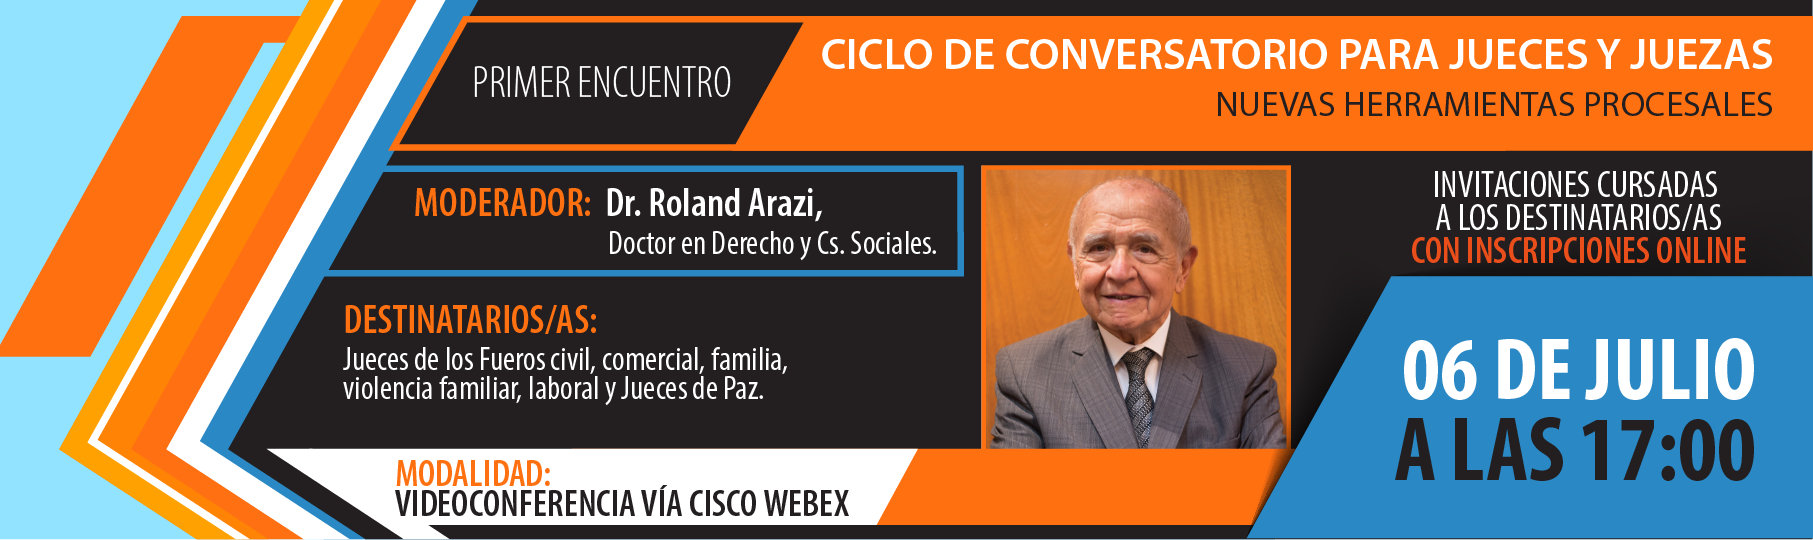 Cr_Curso_Conversatorio_para_Jueces-01